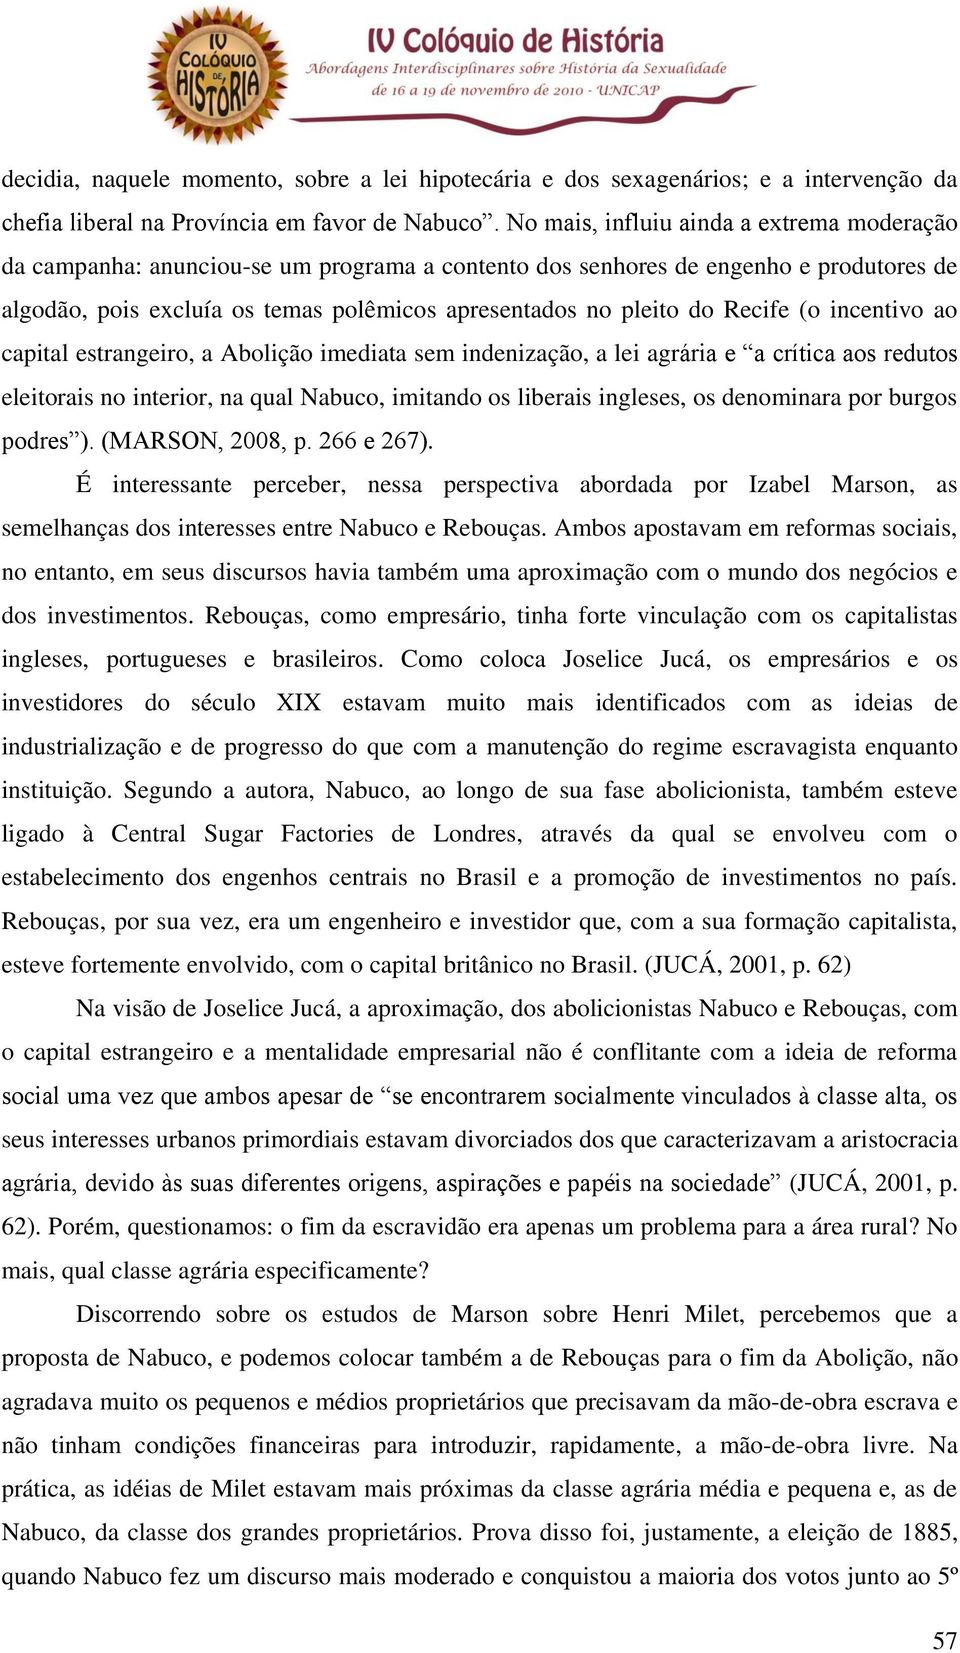 Recife (o incentivo ao capital estrangeiro, a Abolição imediata sem indenização, a lei agrária e a crítica aos redutos eleitorais no interior, na qual Nabuco, imitando os liberais ingleses, os